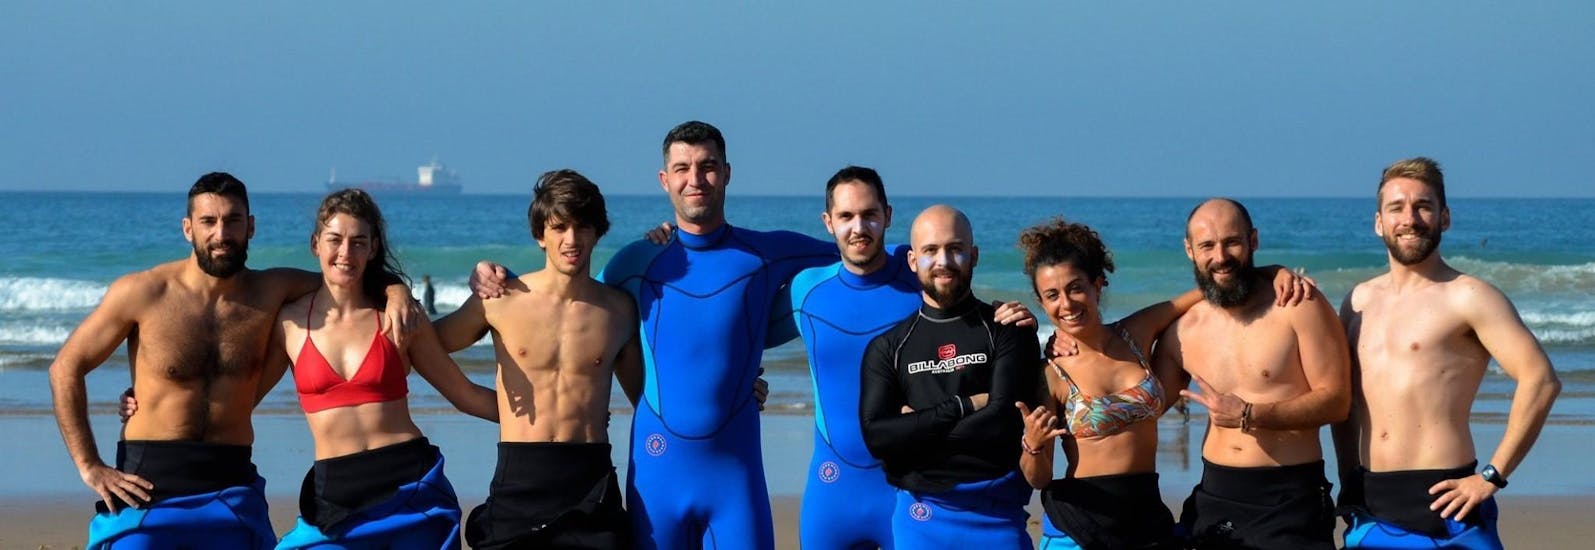 Eine Gruppe von Surfern steht gemeinsam mit ihren Surflehrern von Latas Surf am Strand und lächeln in die Kamera.